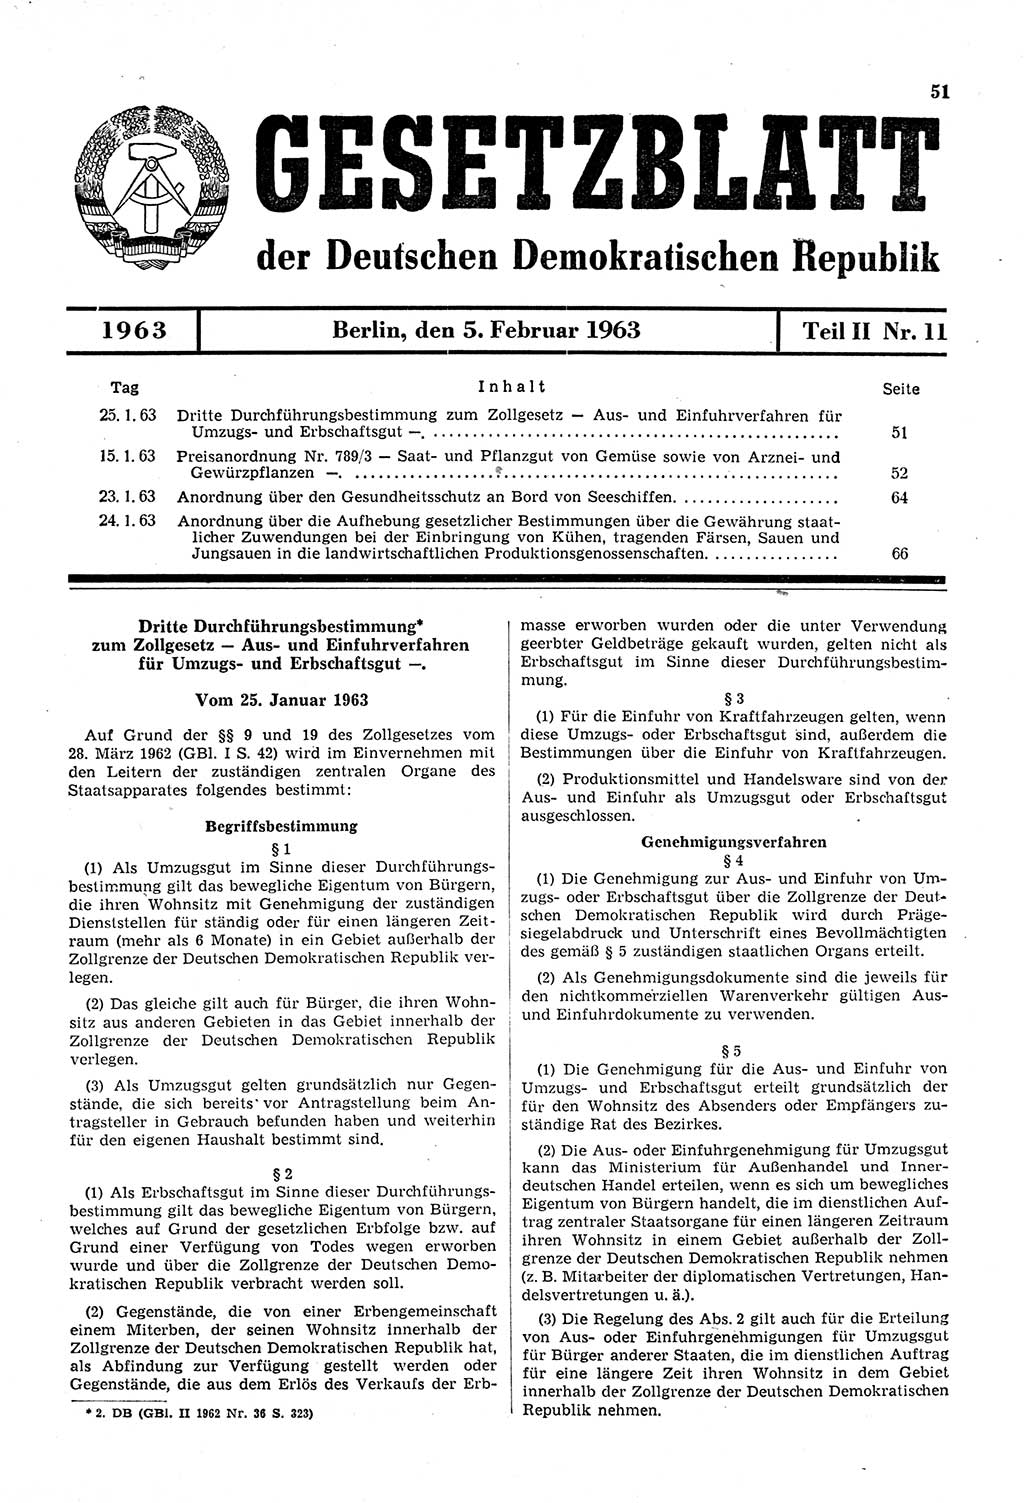 Gesetzblatt (GBl.) der Deutschen Demokratischen Republik (DDR) Teil ⅠⅠ 1963, Seite 51 (GBl. DDR ⅠⅠ 1963, S. 51)